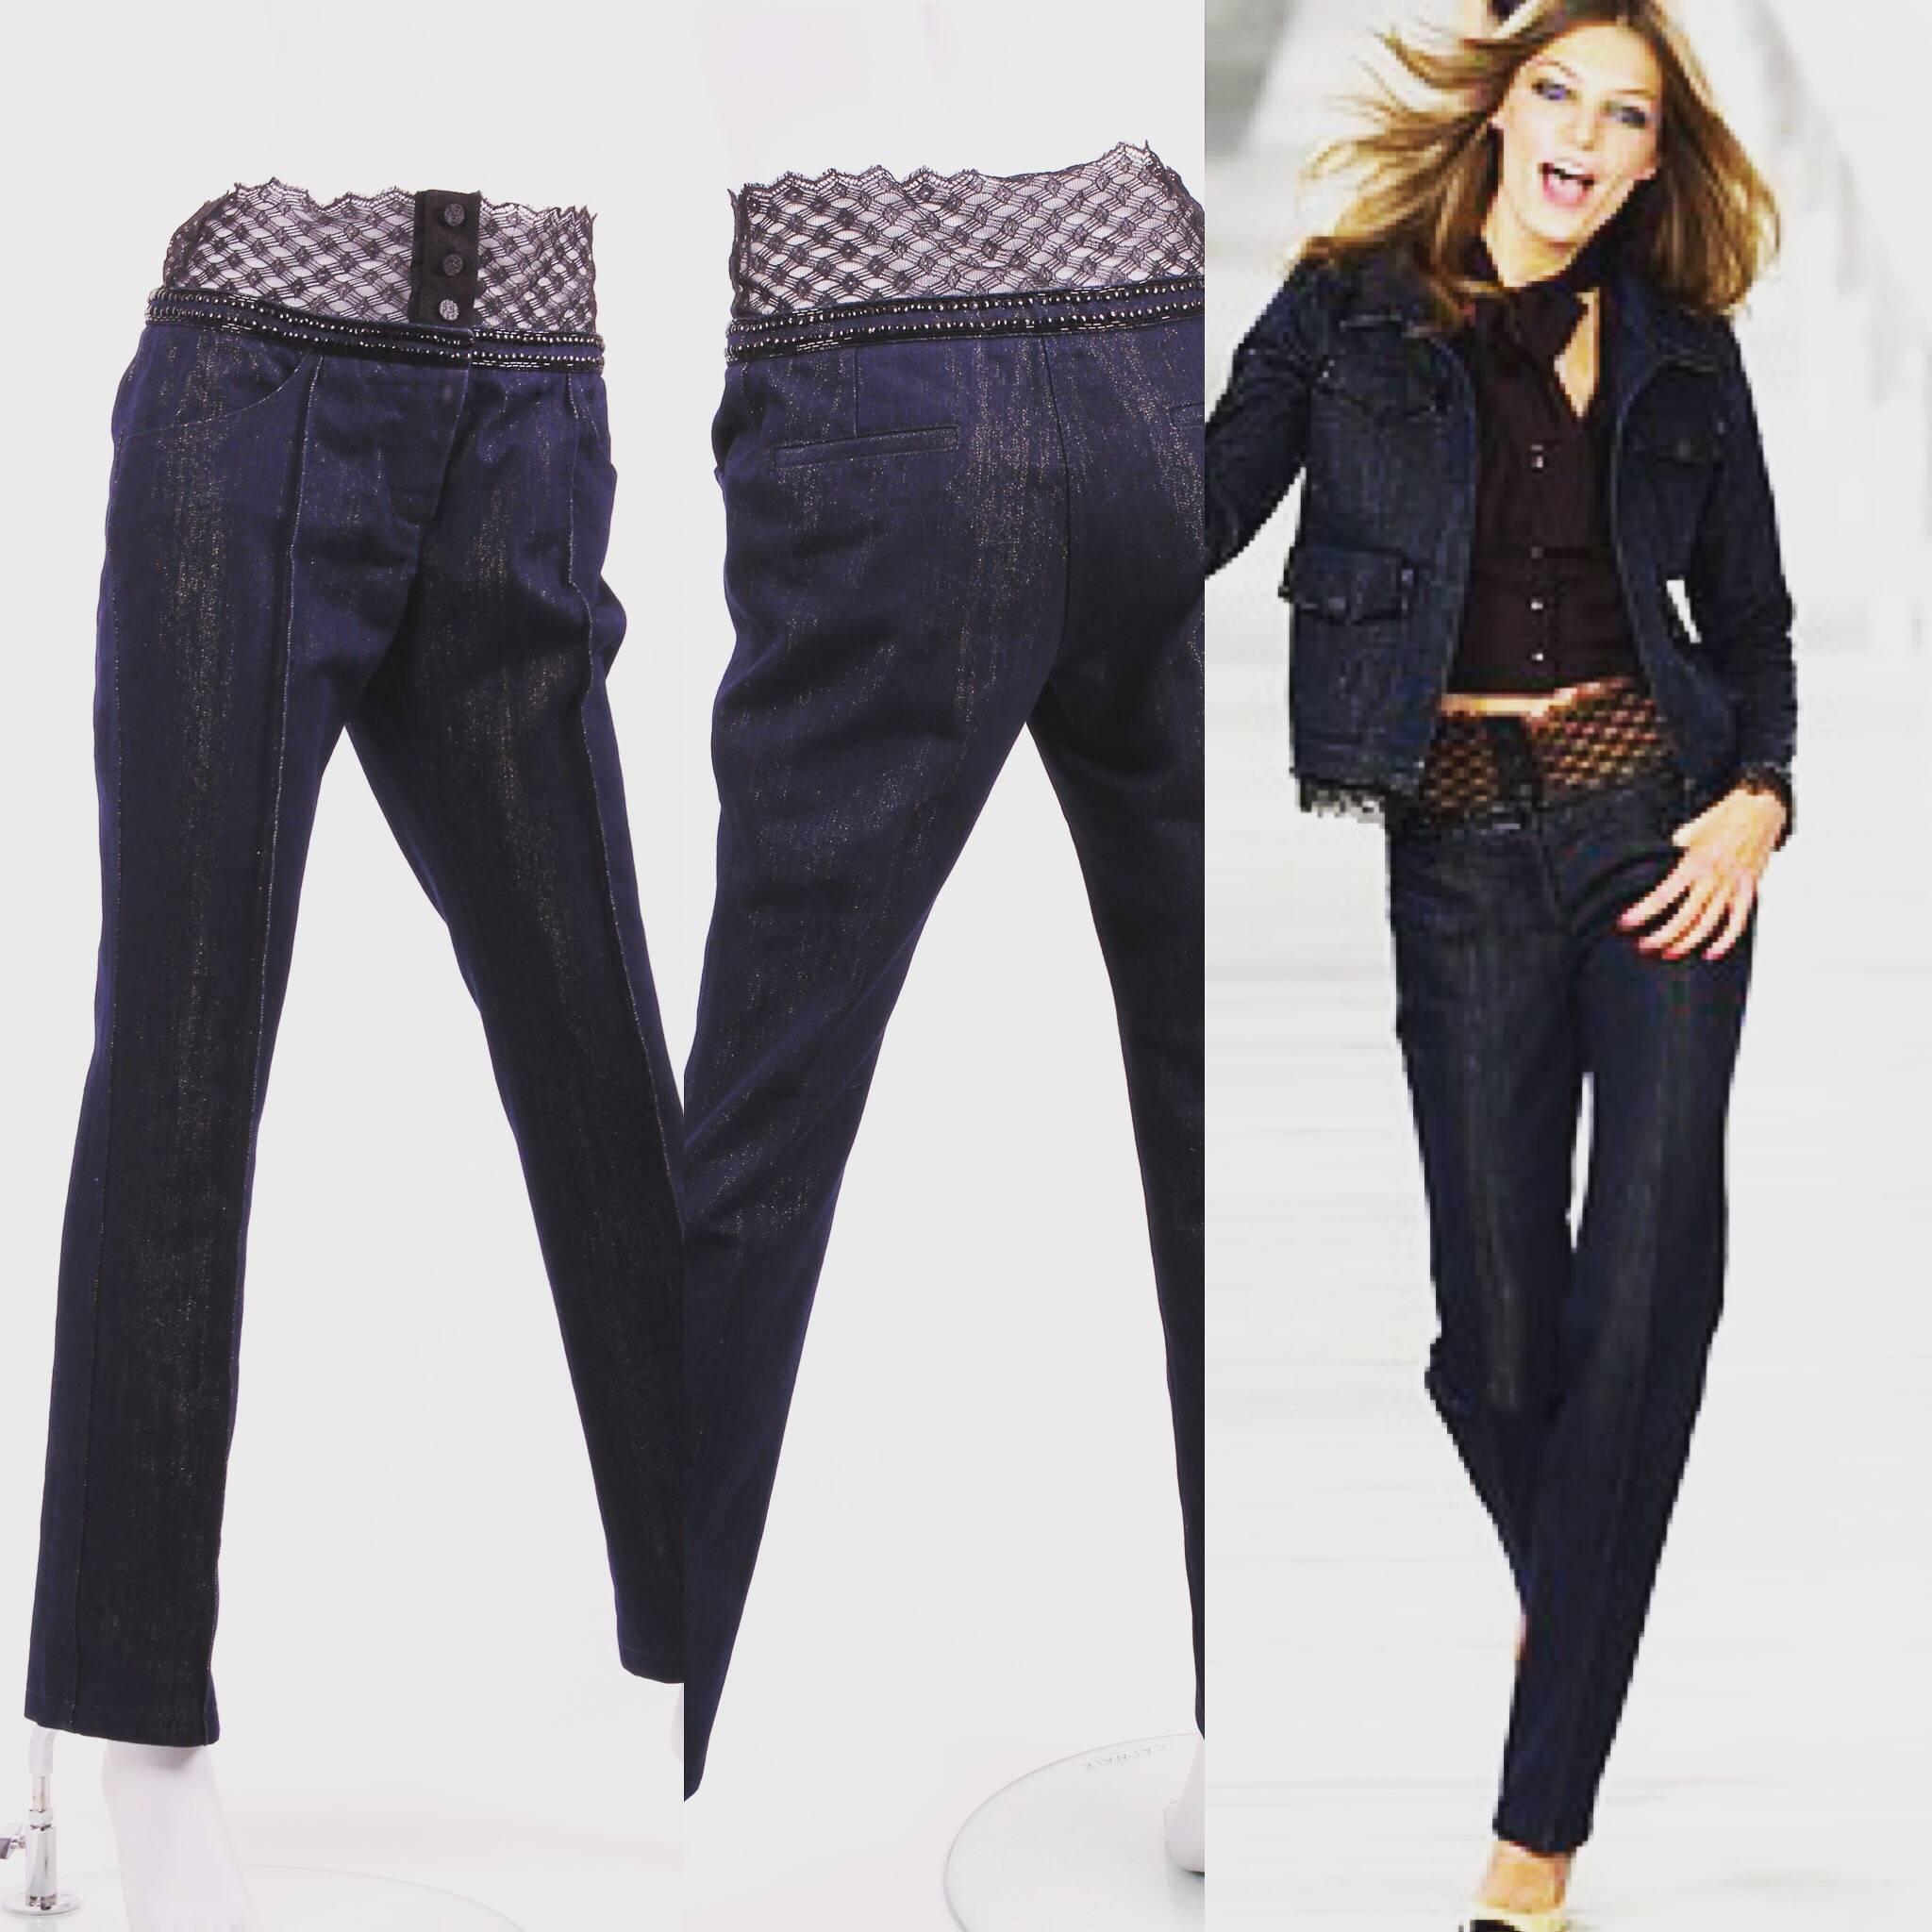 Black Chanel Jeans Denim Pants - blue/gold & black lace For Sale